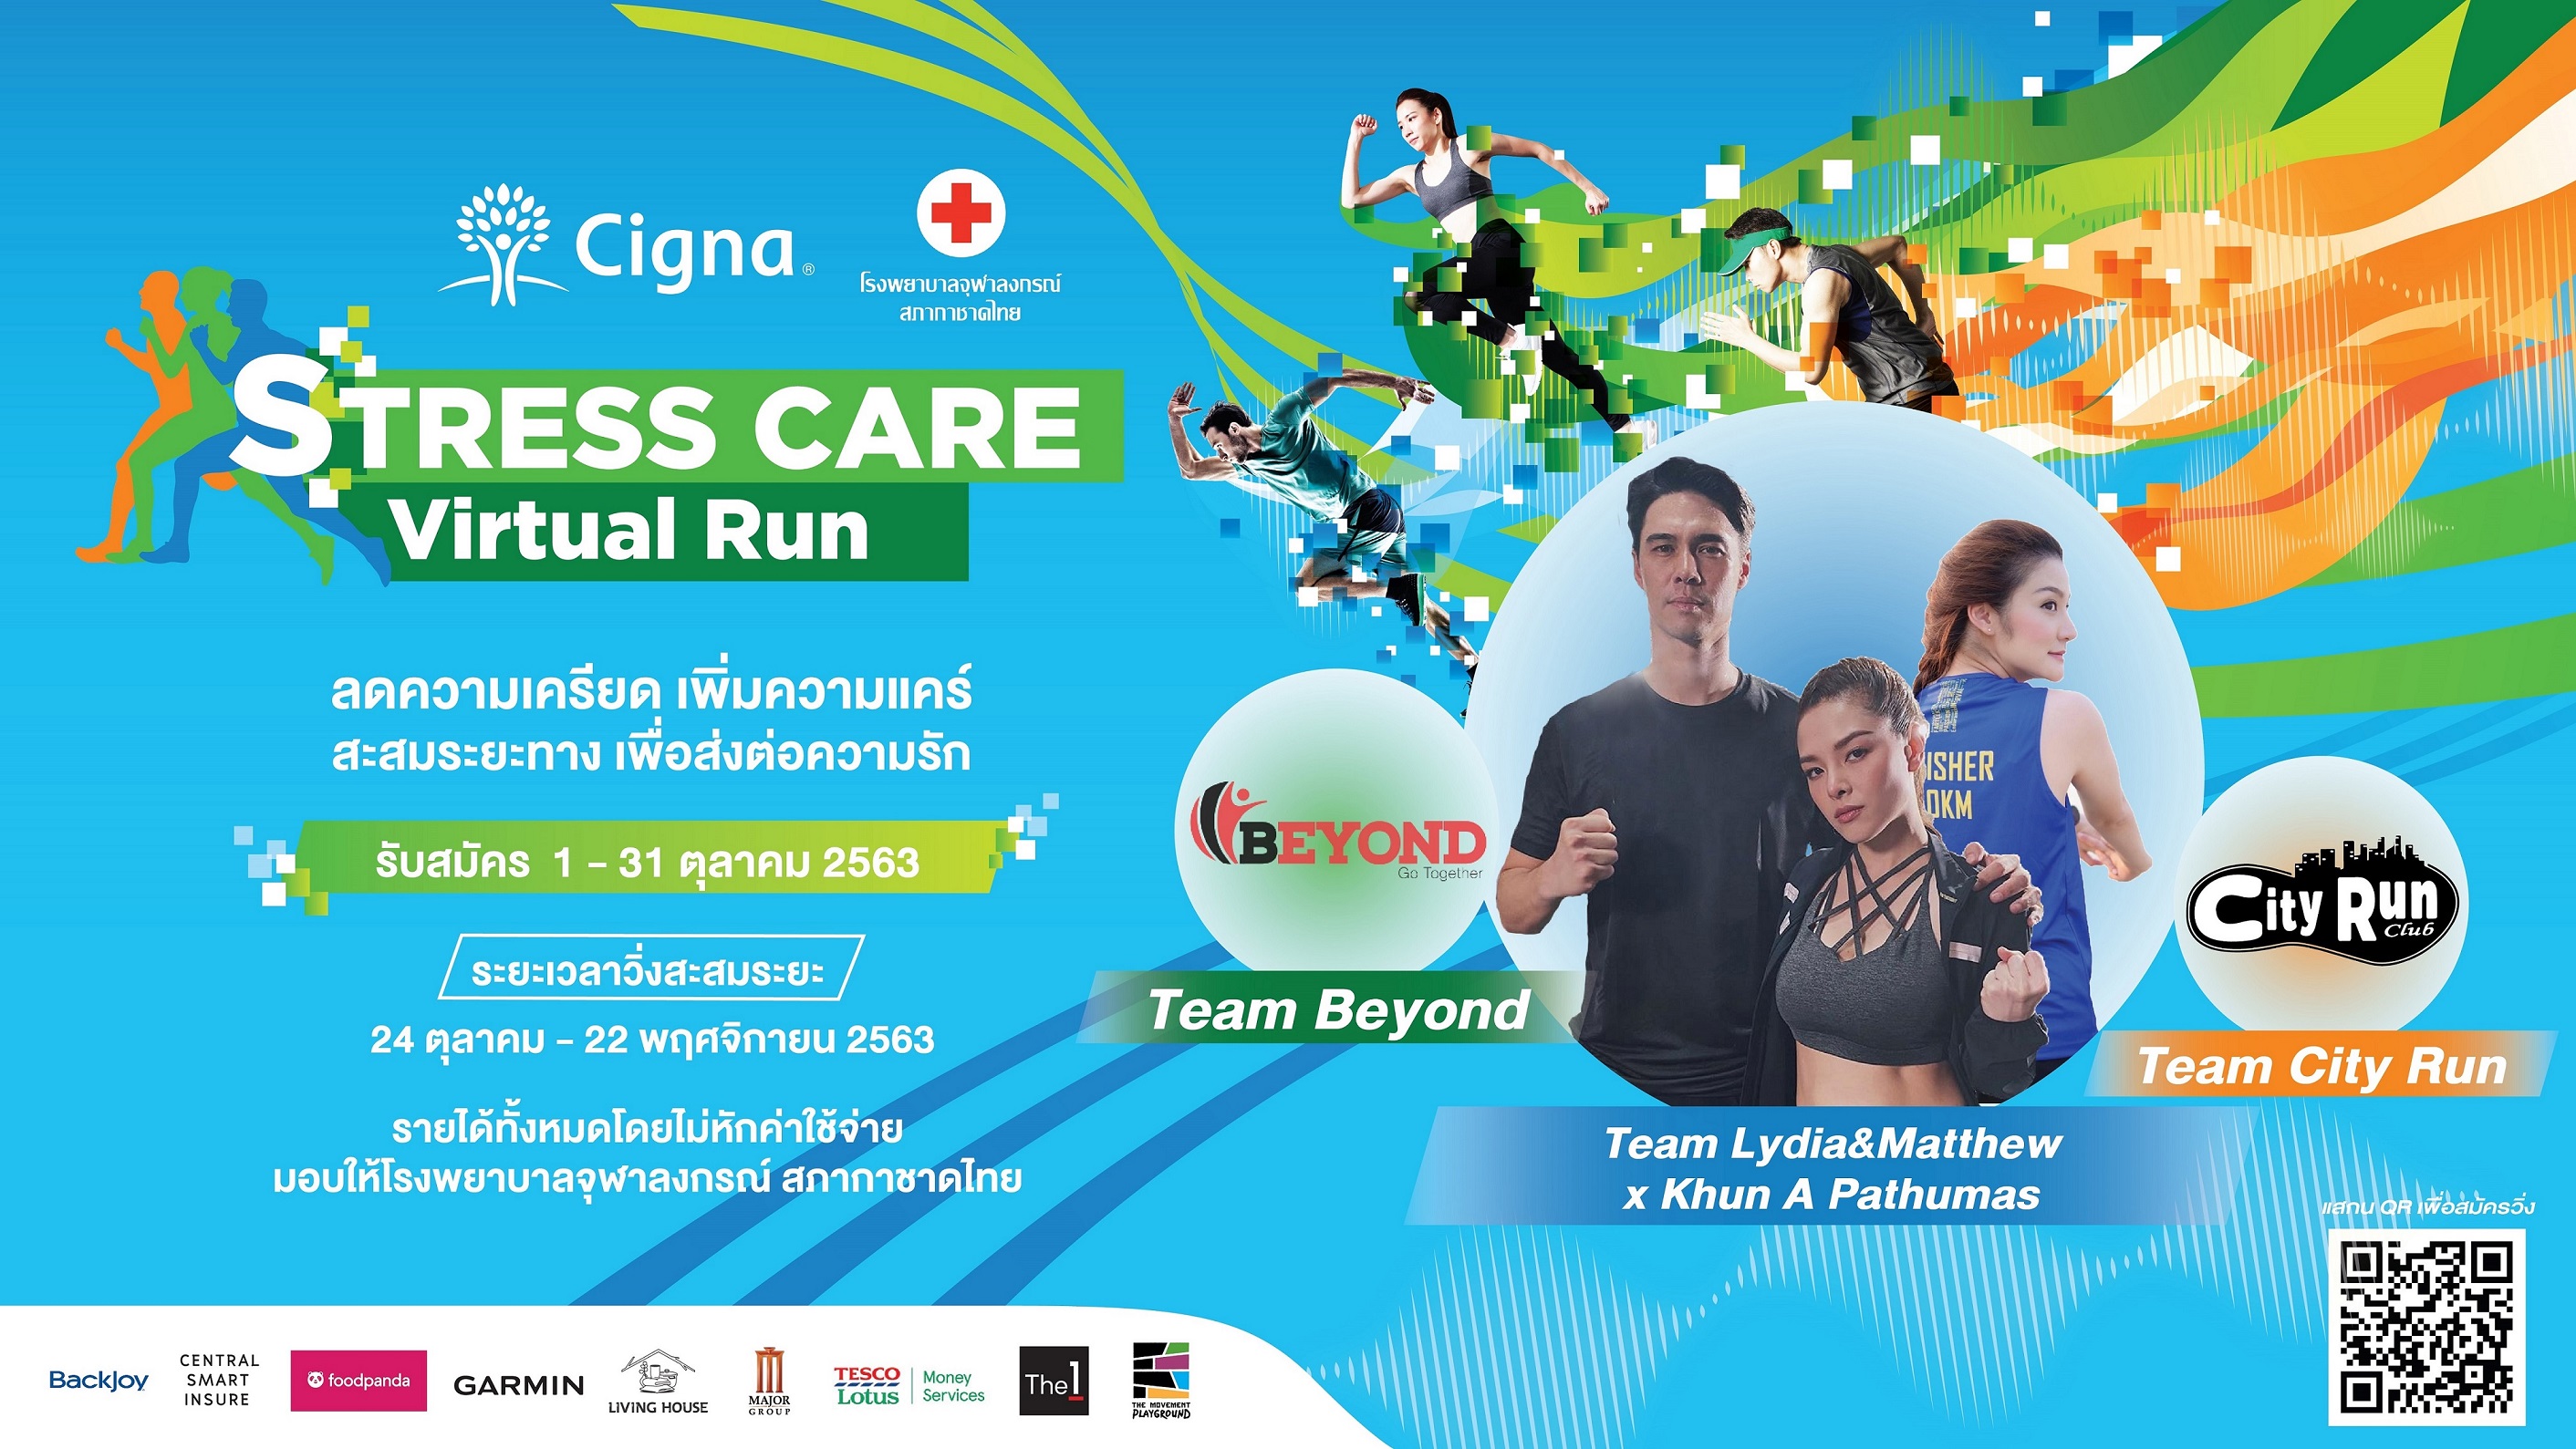 ซิกน่า ประกันภัย ชวนคนไทยวิ่งสลายเครียด ปีที่ 2 ในรูปแบบ Virtual Run รายได้ทั้งหมด ไม่หักค่าใช้จ่าย มอบให้แก่โรงพยาบาลจุฬาลงกรณ์